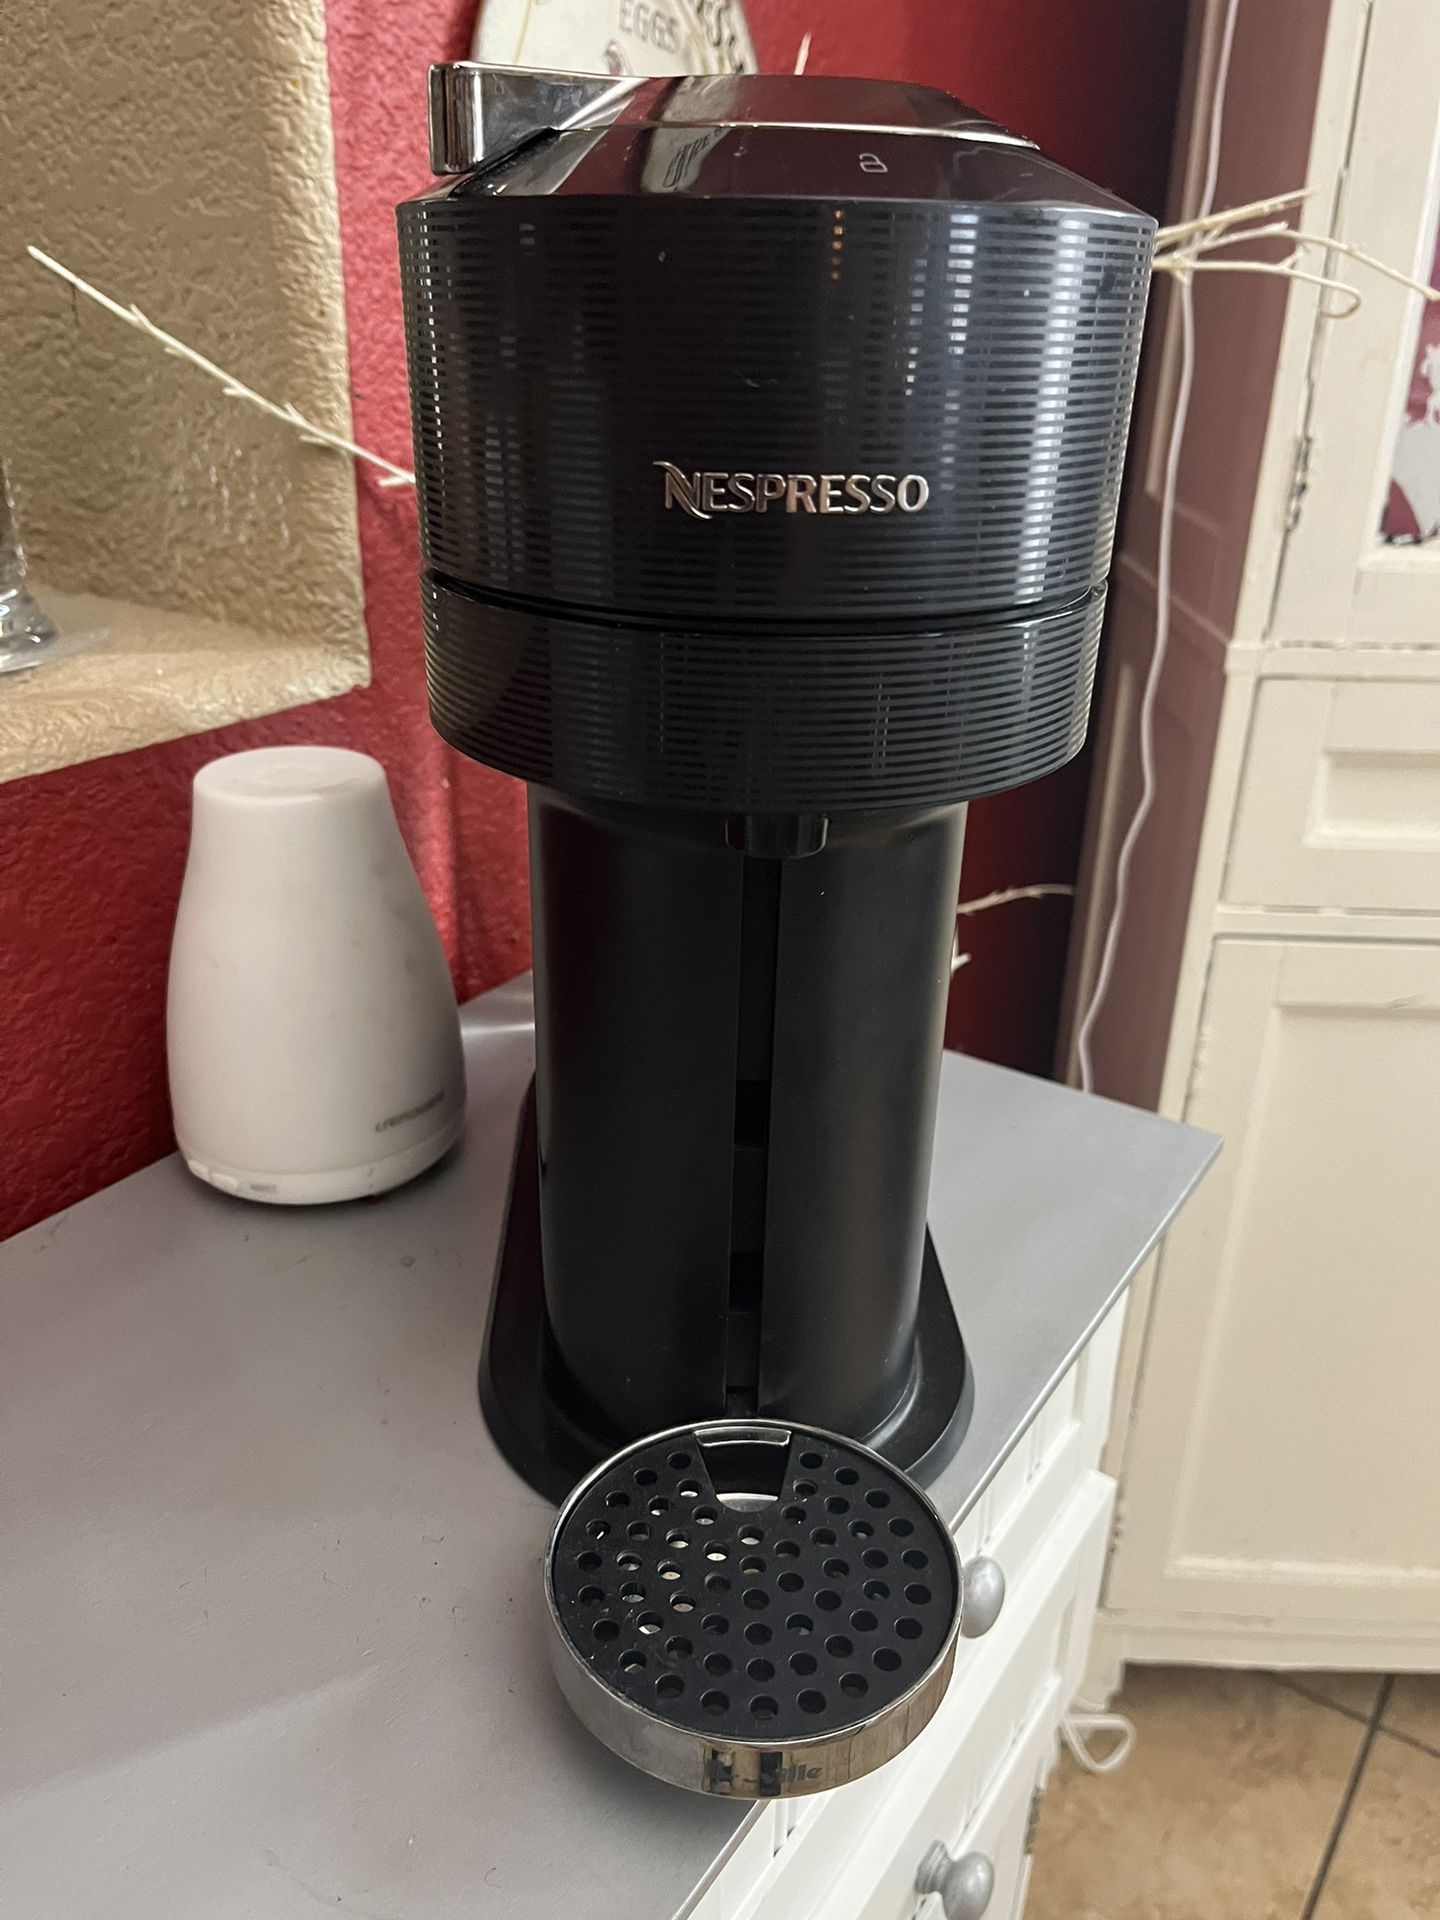 Nespresso Vertuo next